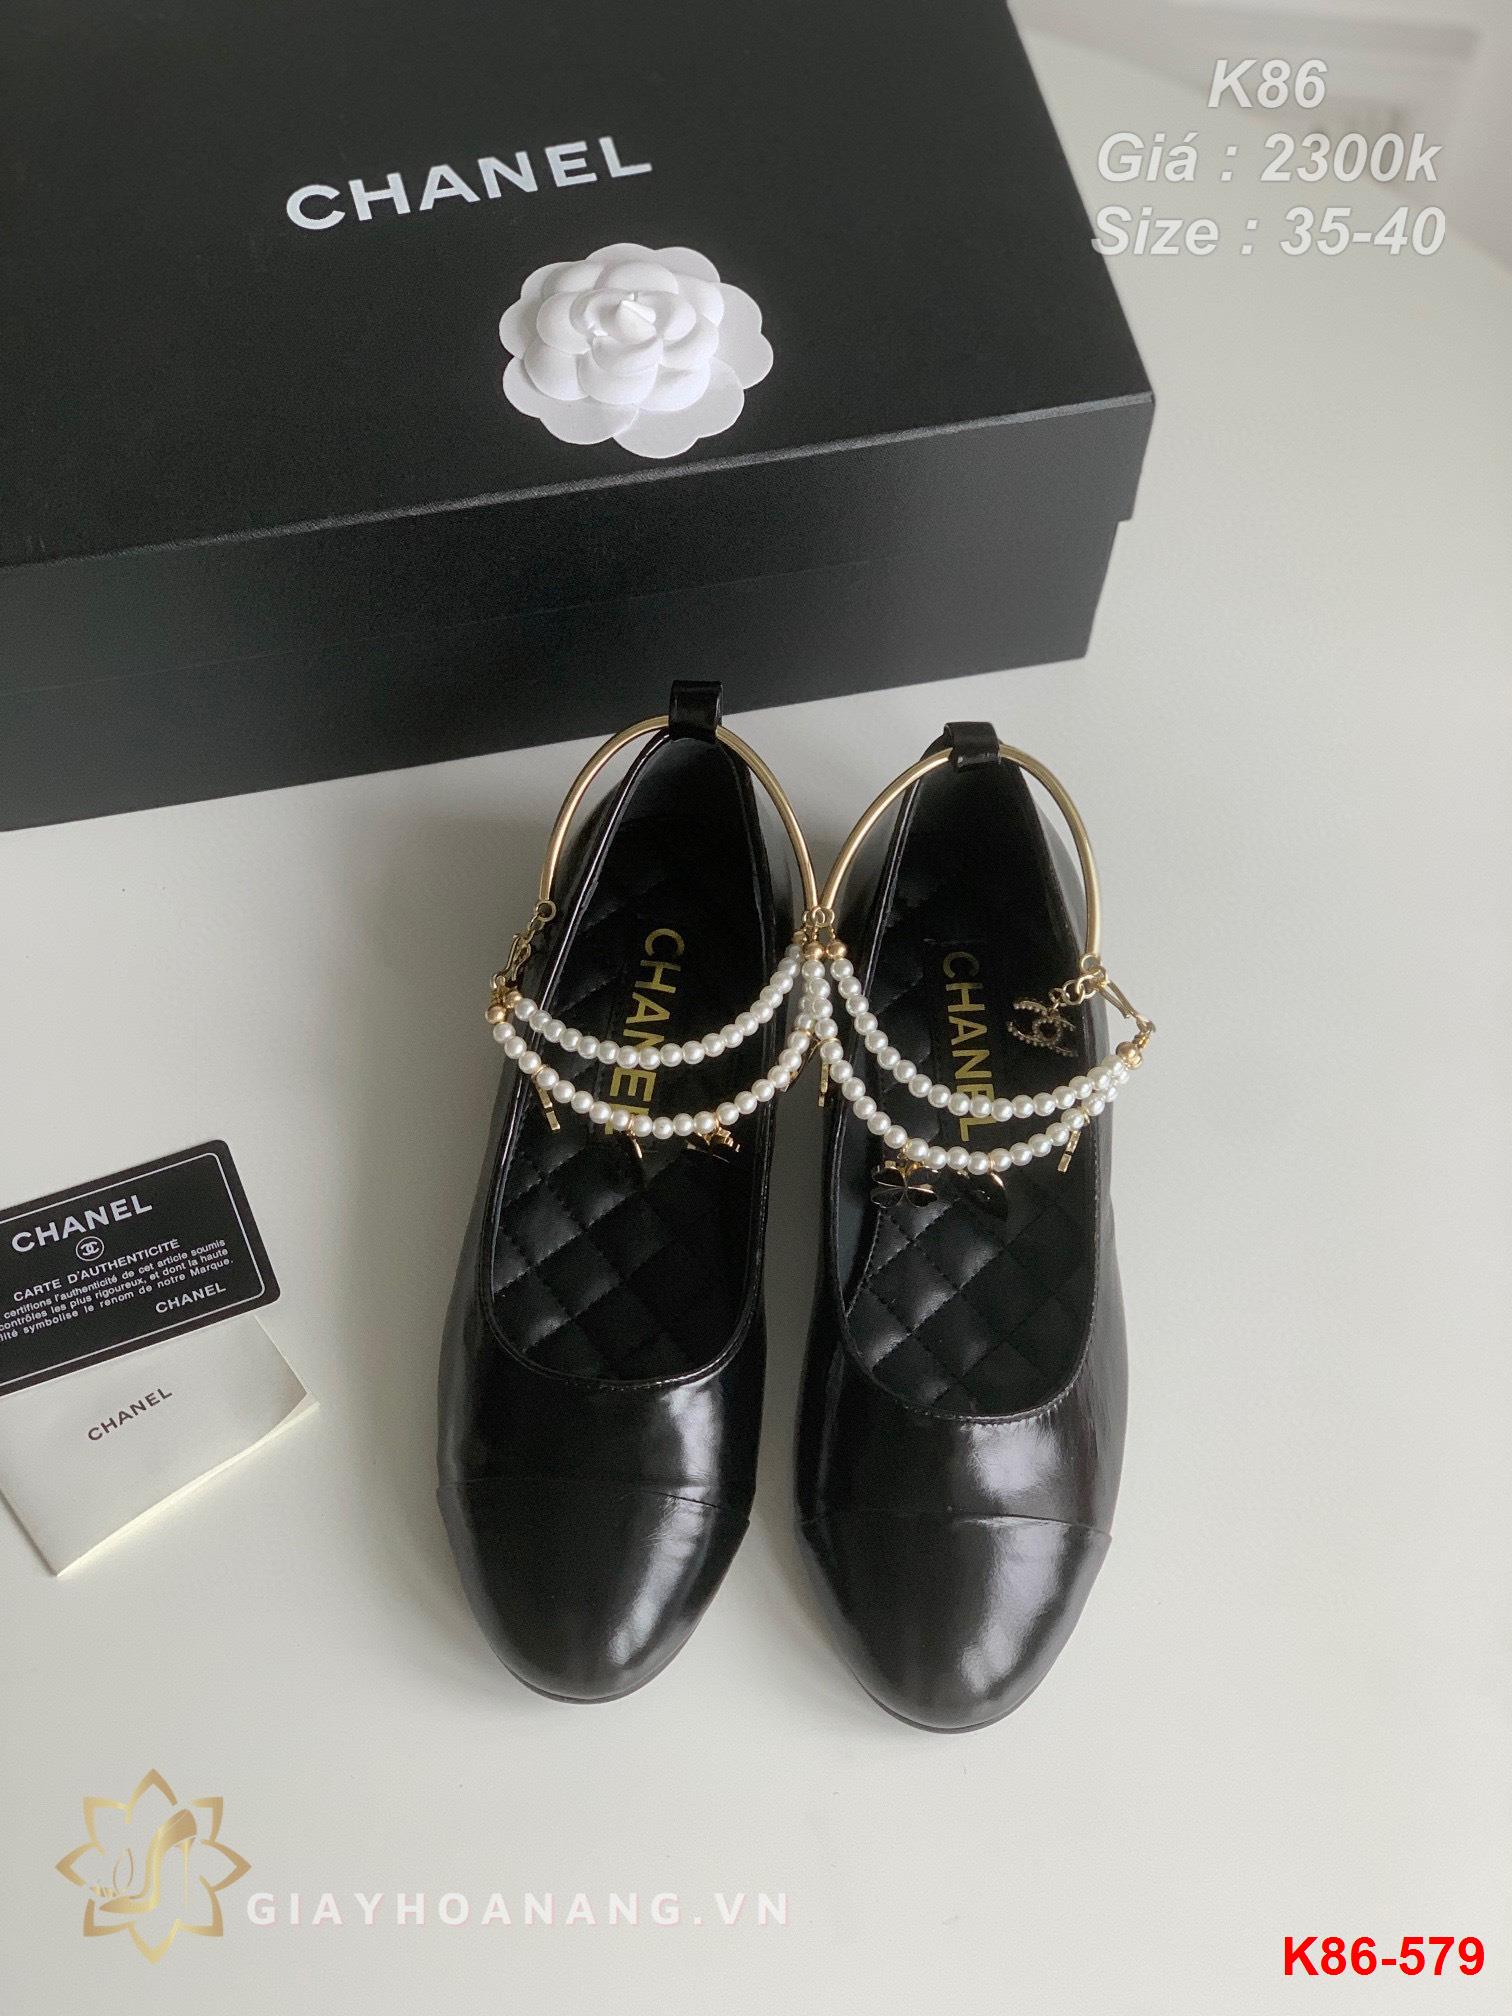 K86-579 Chanel giày bệt siêu cấp